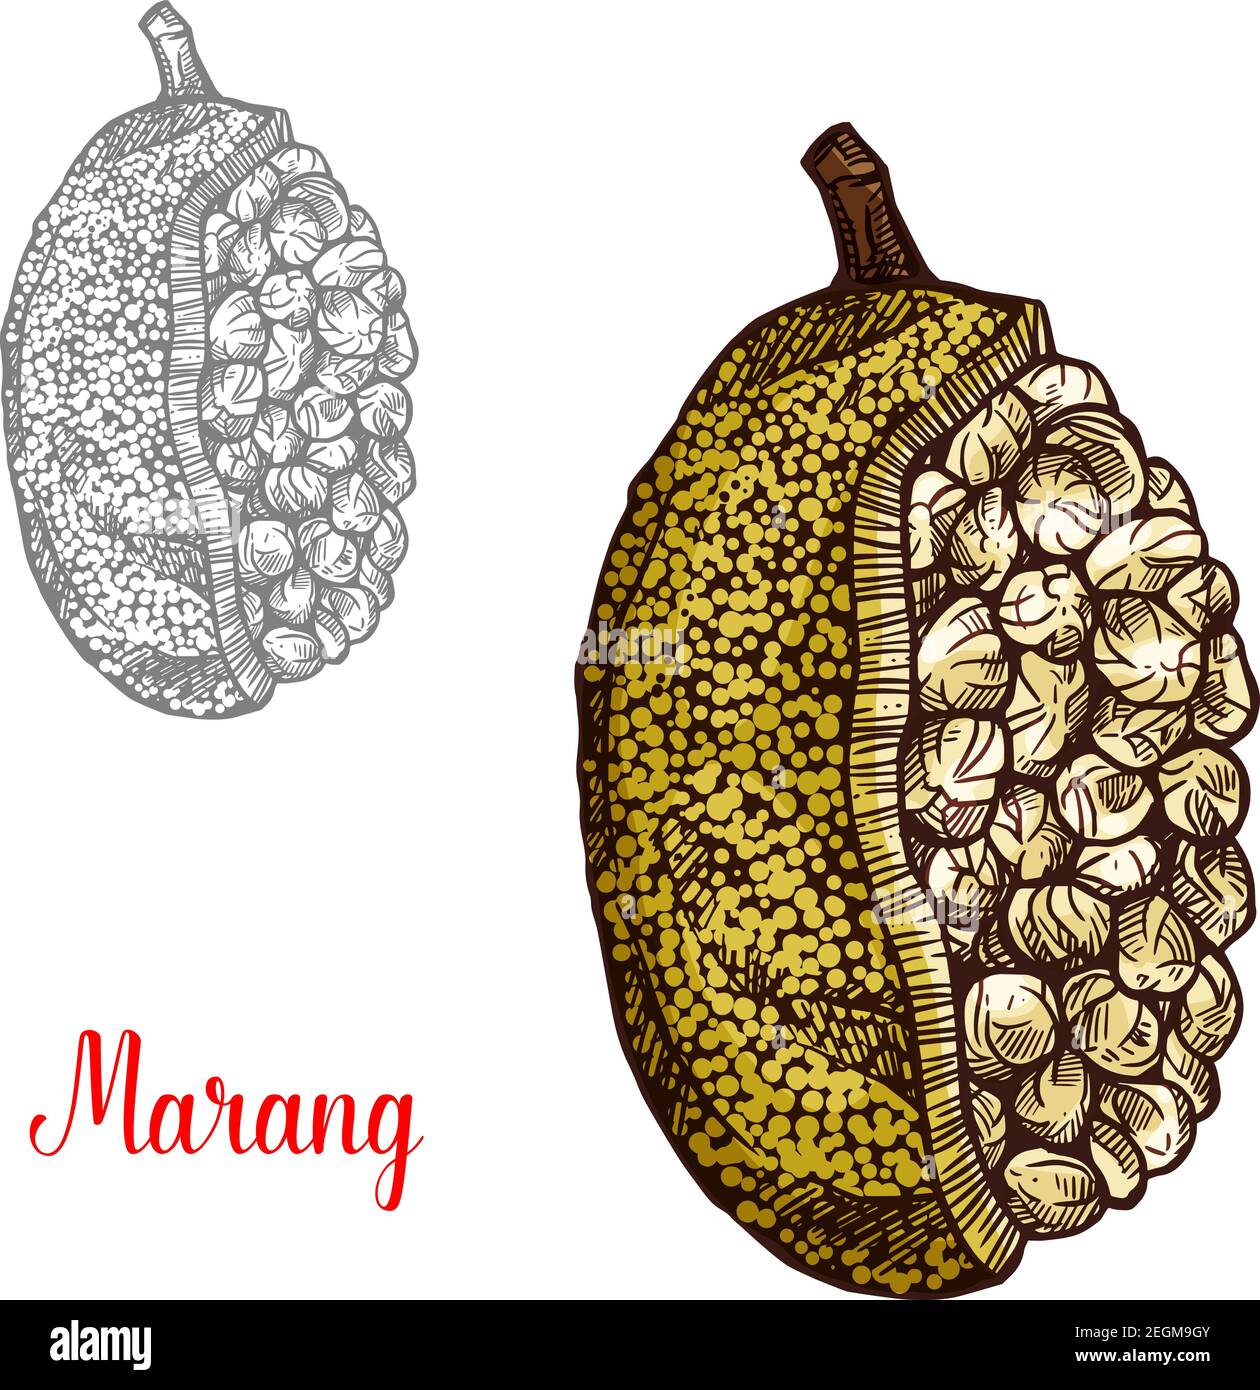 Marang o terap frutto schizzo di albero esotico malese. Quercia Johey frutto tropicale dell'isola Borneo con buccia verde e polpa bianca isolata icona f Illustrazione Vettoriale